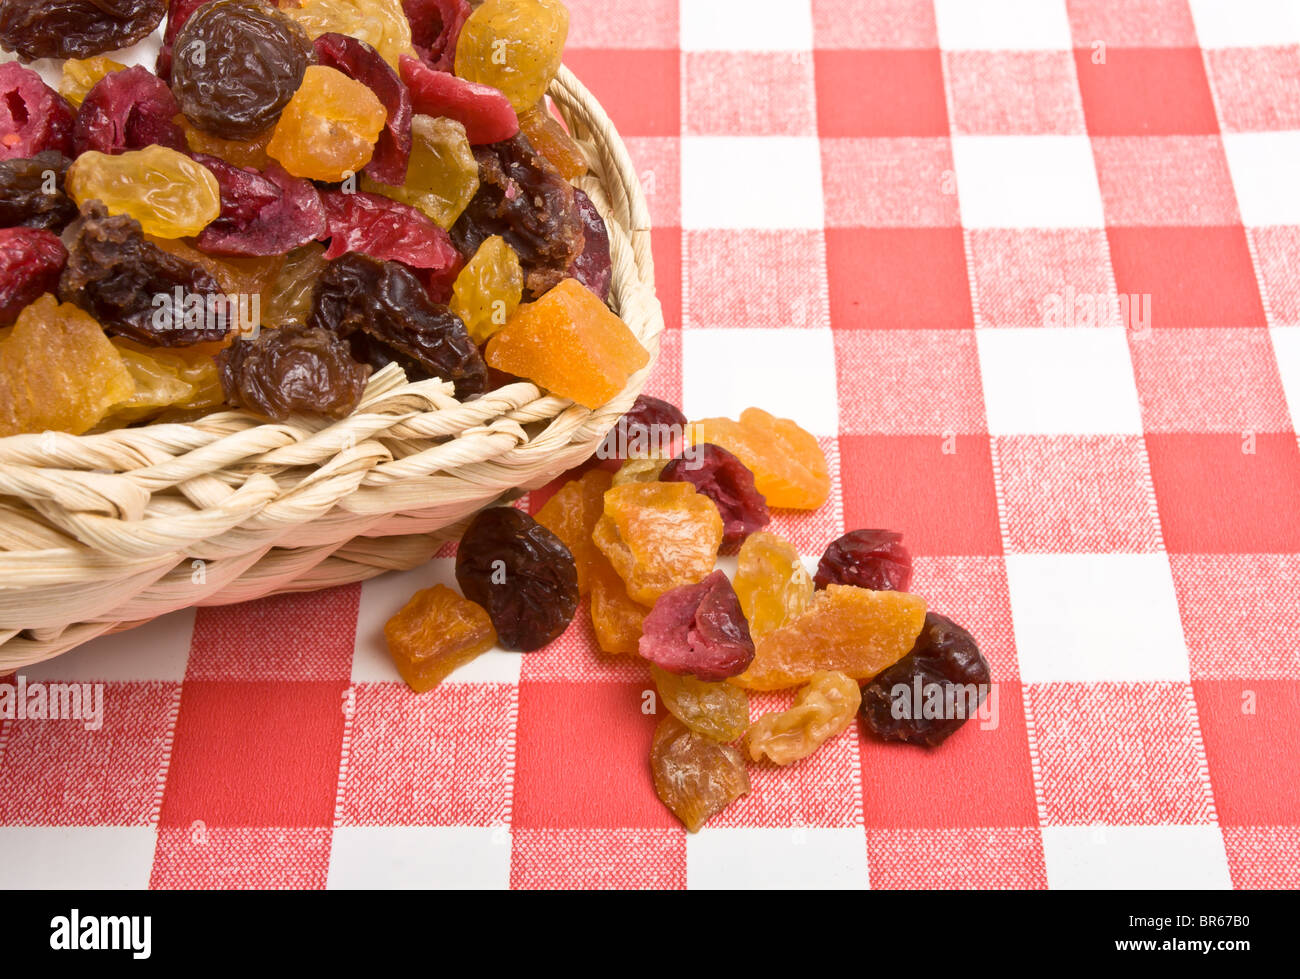 Fruits secs, d'abricot, sultana, les raisins et les canneberges sur nappe blanche et rouge. Banque D'Images